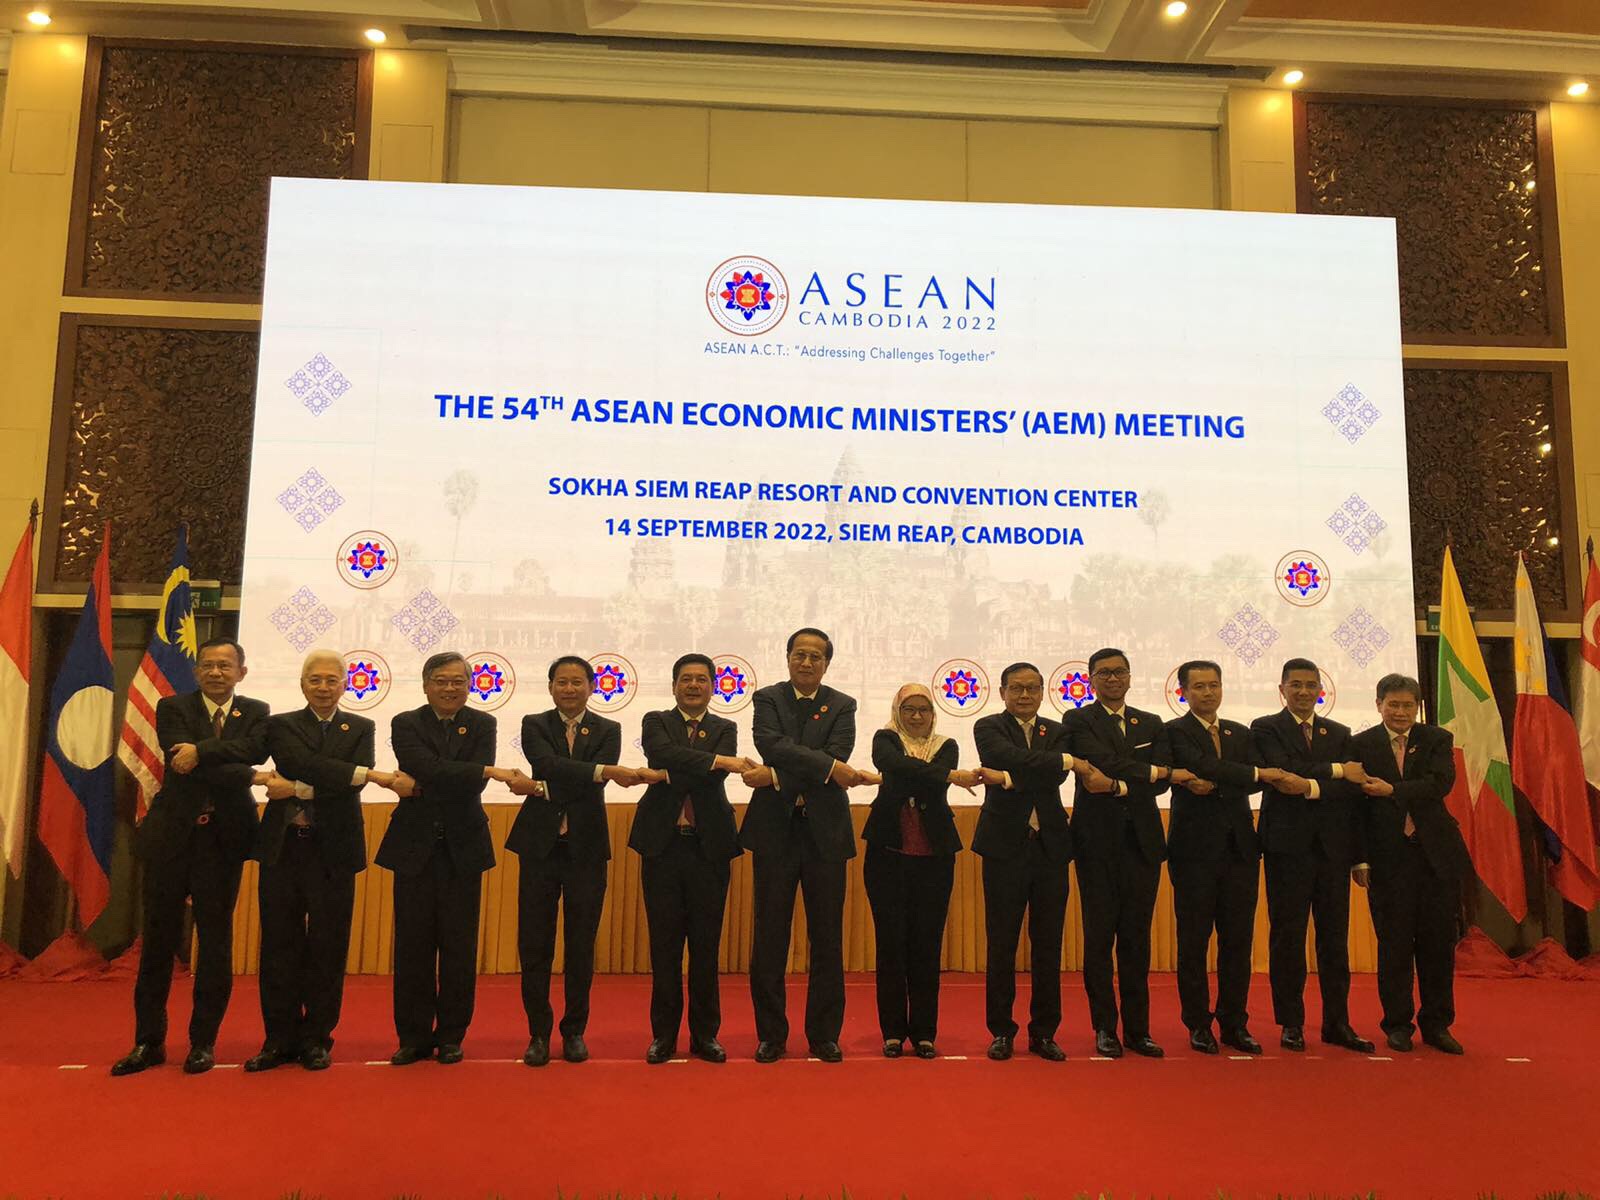 Hội nghị Bộ trưởng Hiệp định RCEP và các Hội nghị tham vấn cấp Bộ trưởng kinh tế giữa Asean và